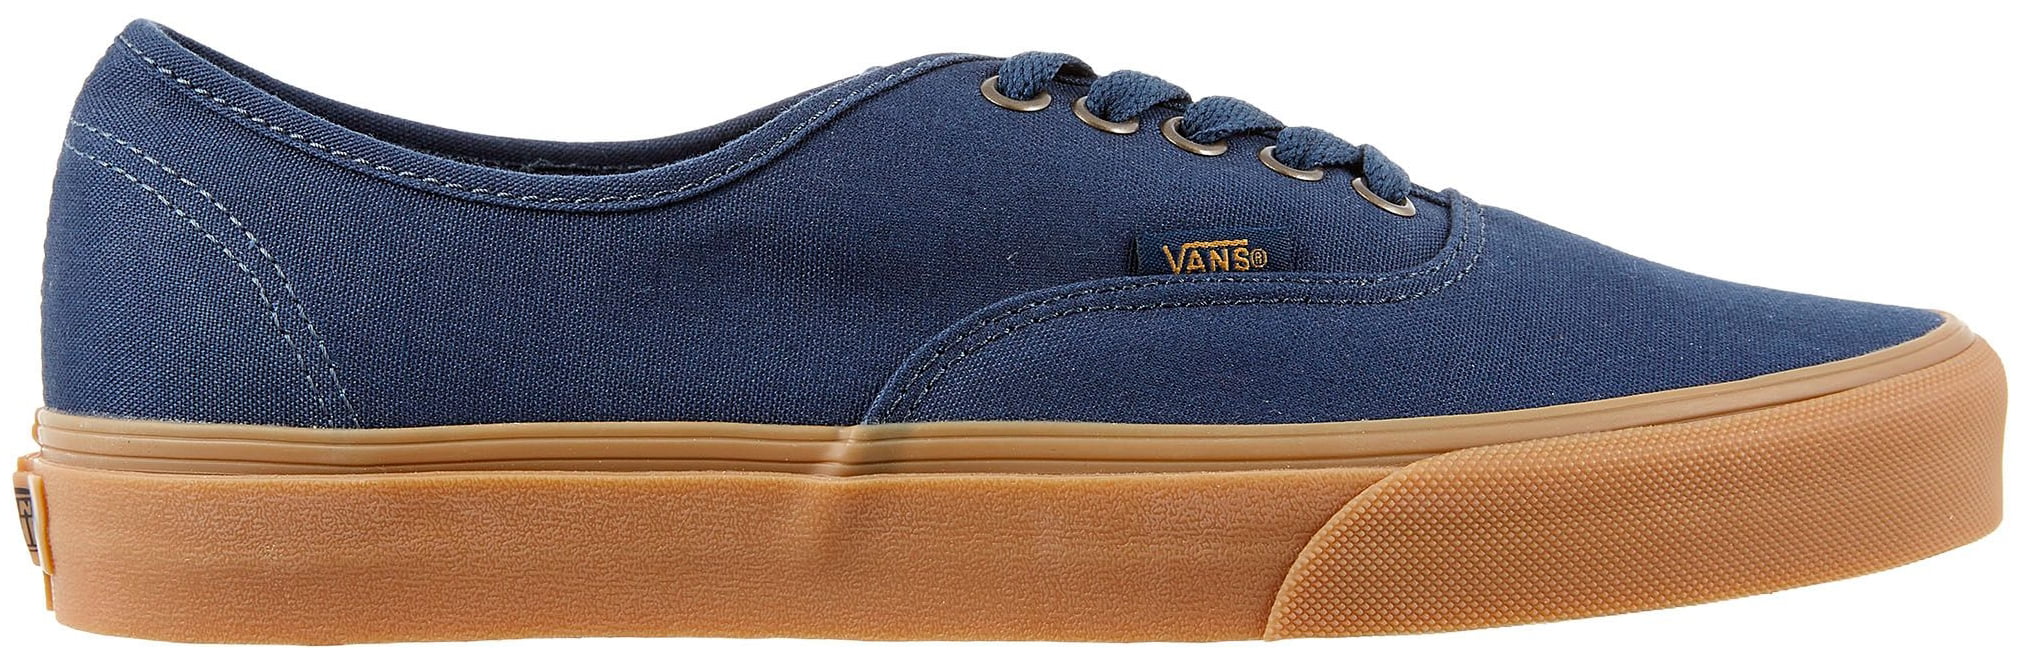 Vans Men's Authentic Shoes (Blue/Tan 